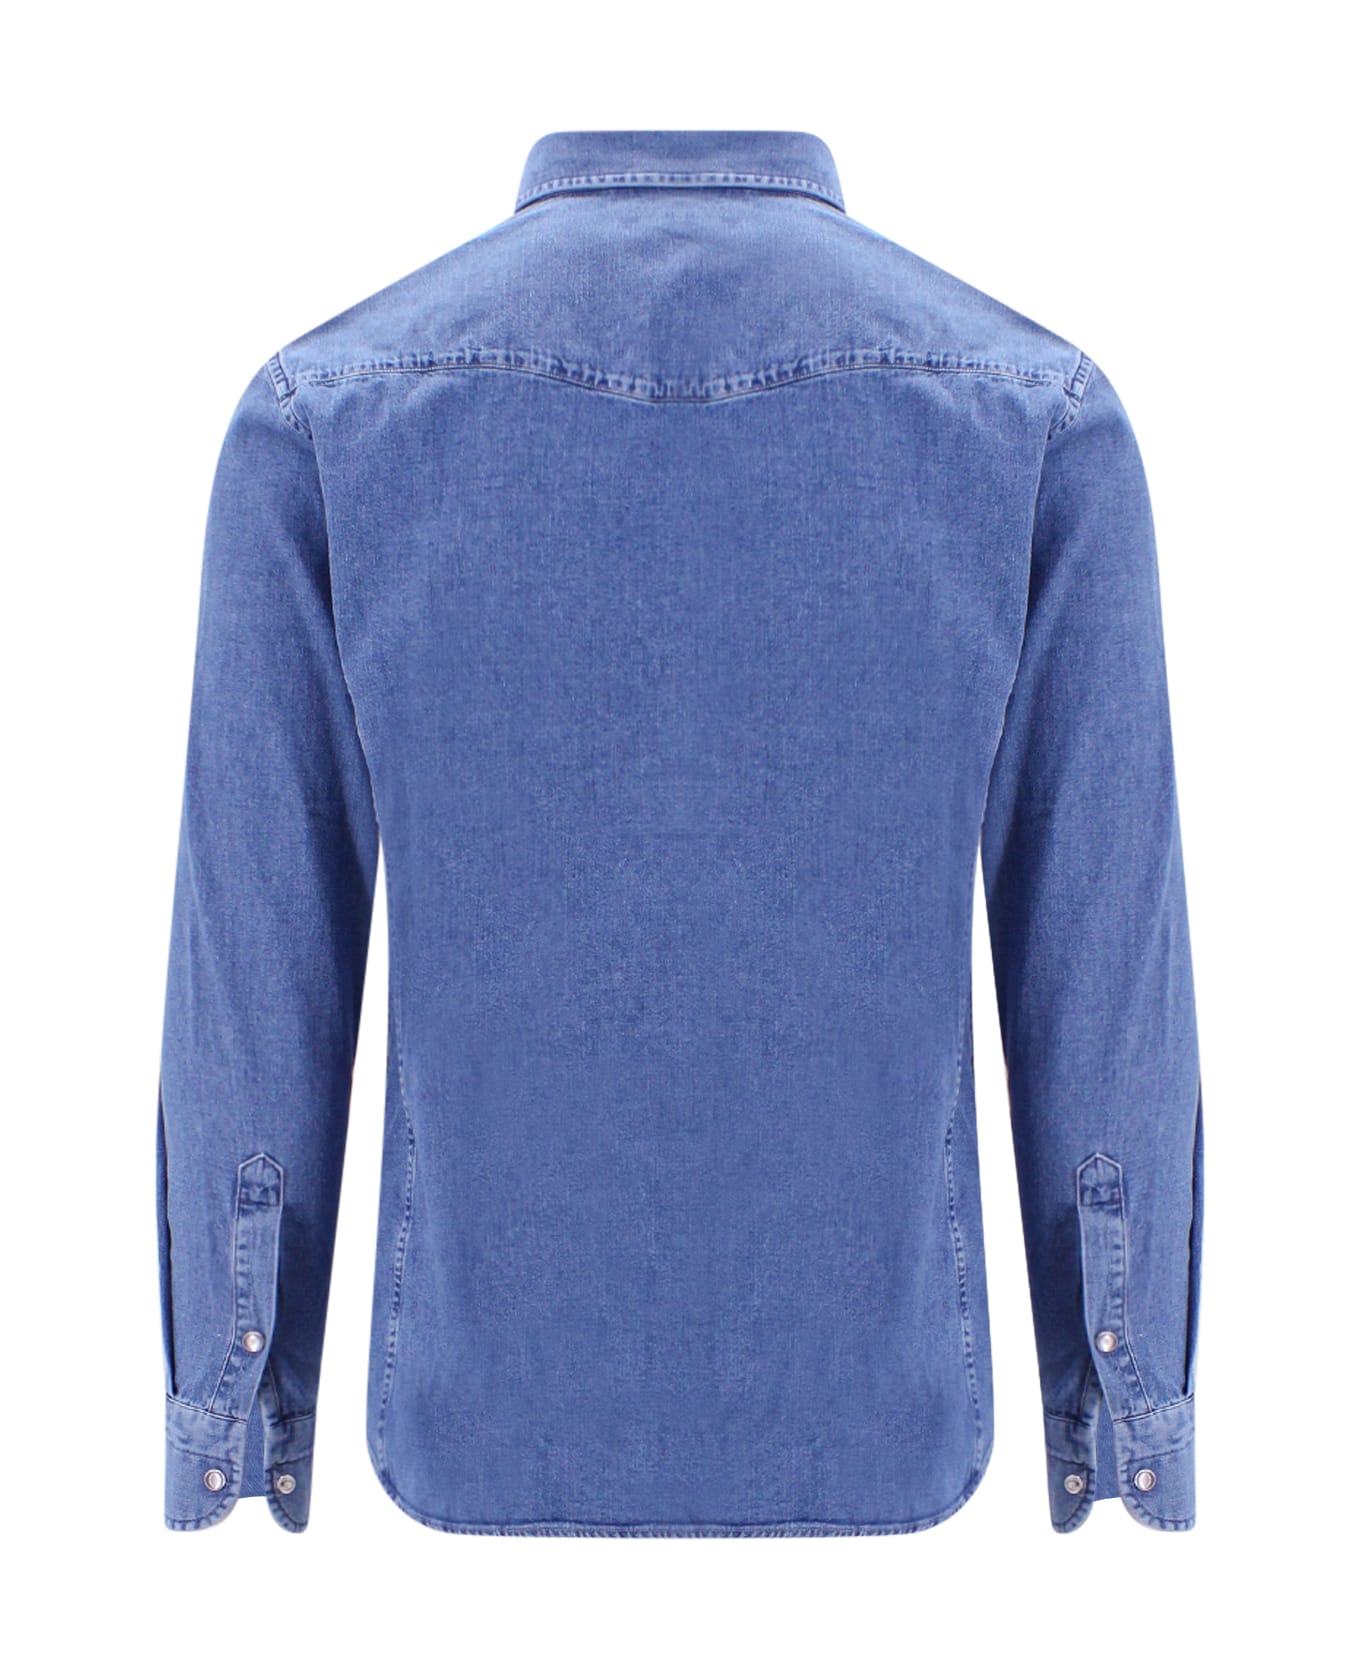 Tom Ford Shirt - WASHED INDIGO (Blue)